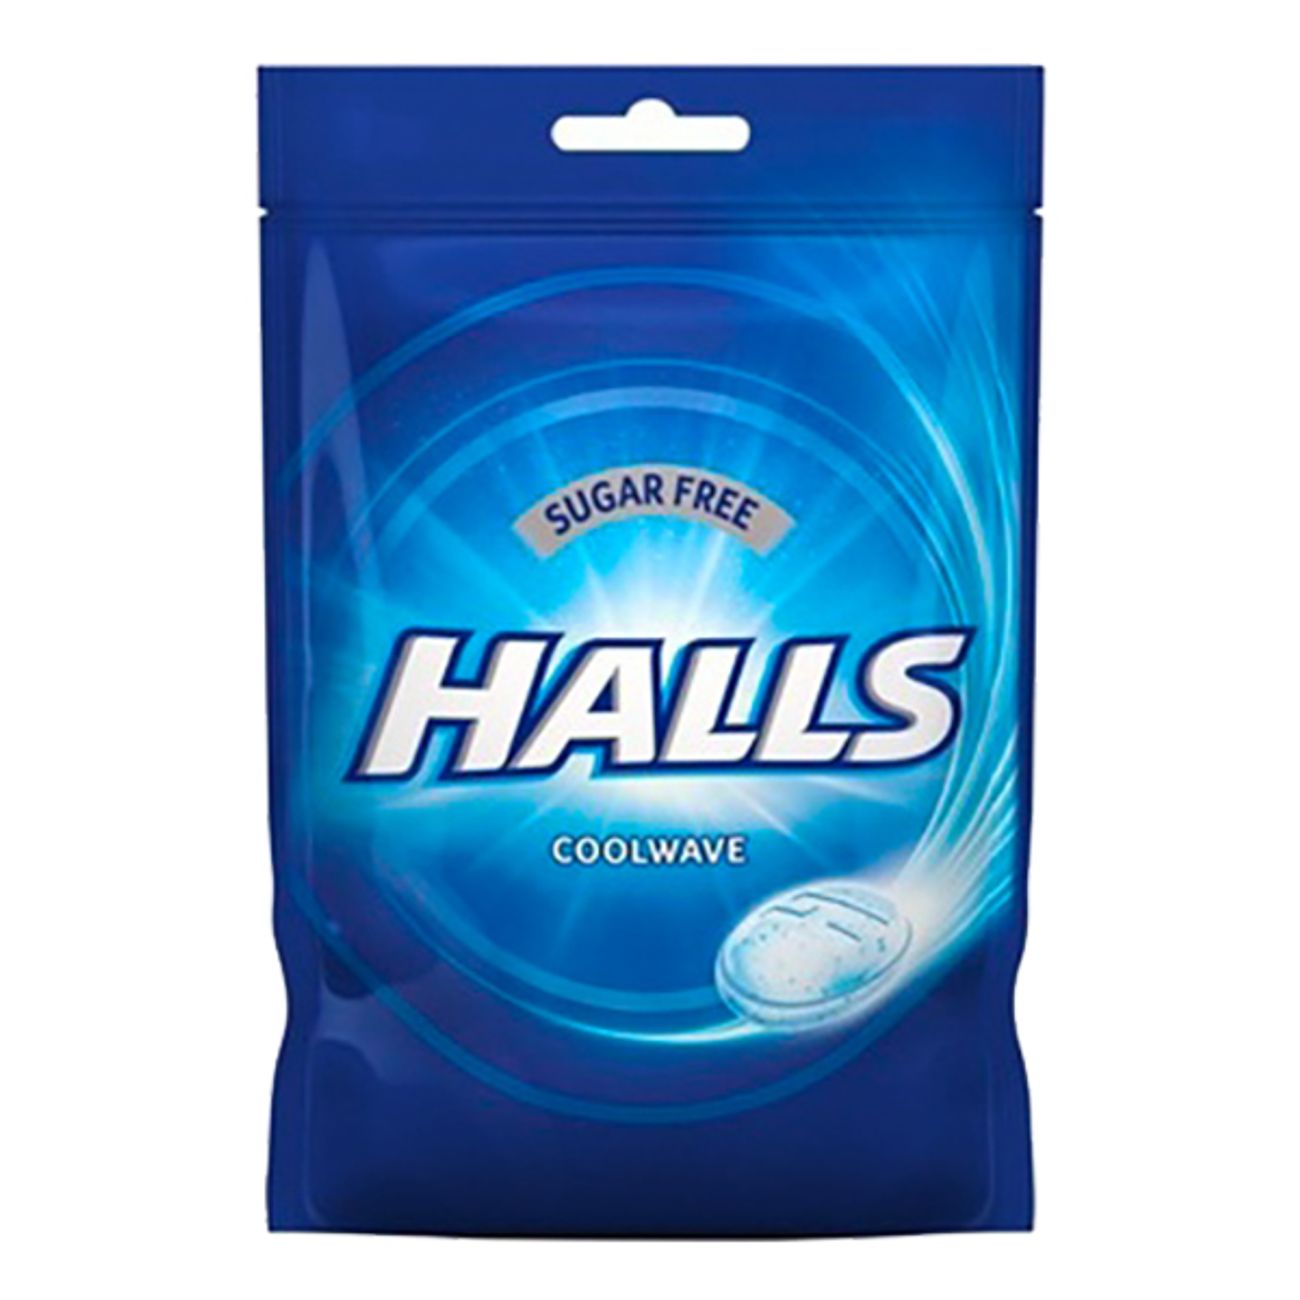 halls-coolwave-sugar-free-halstabletter-73936-1